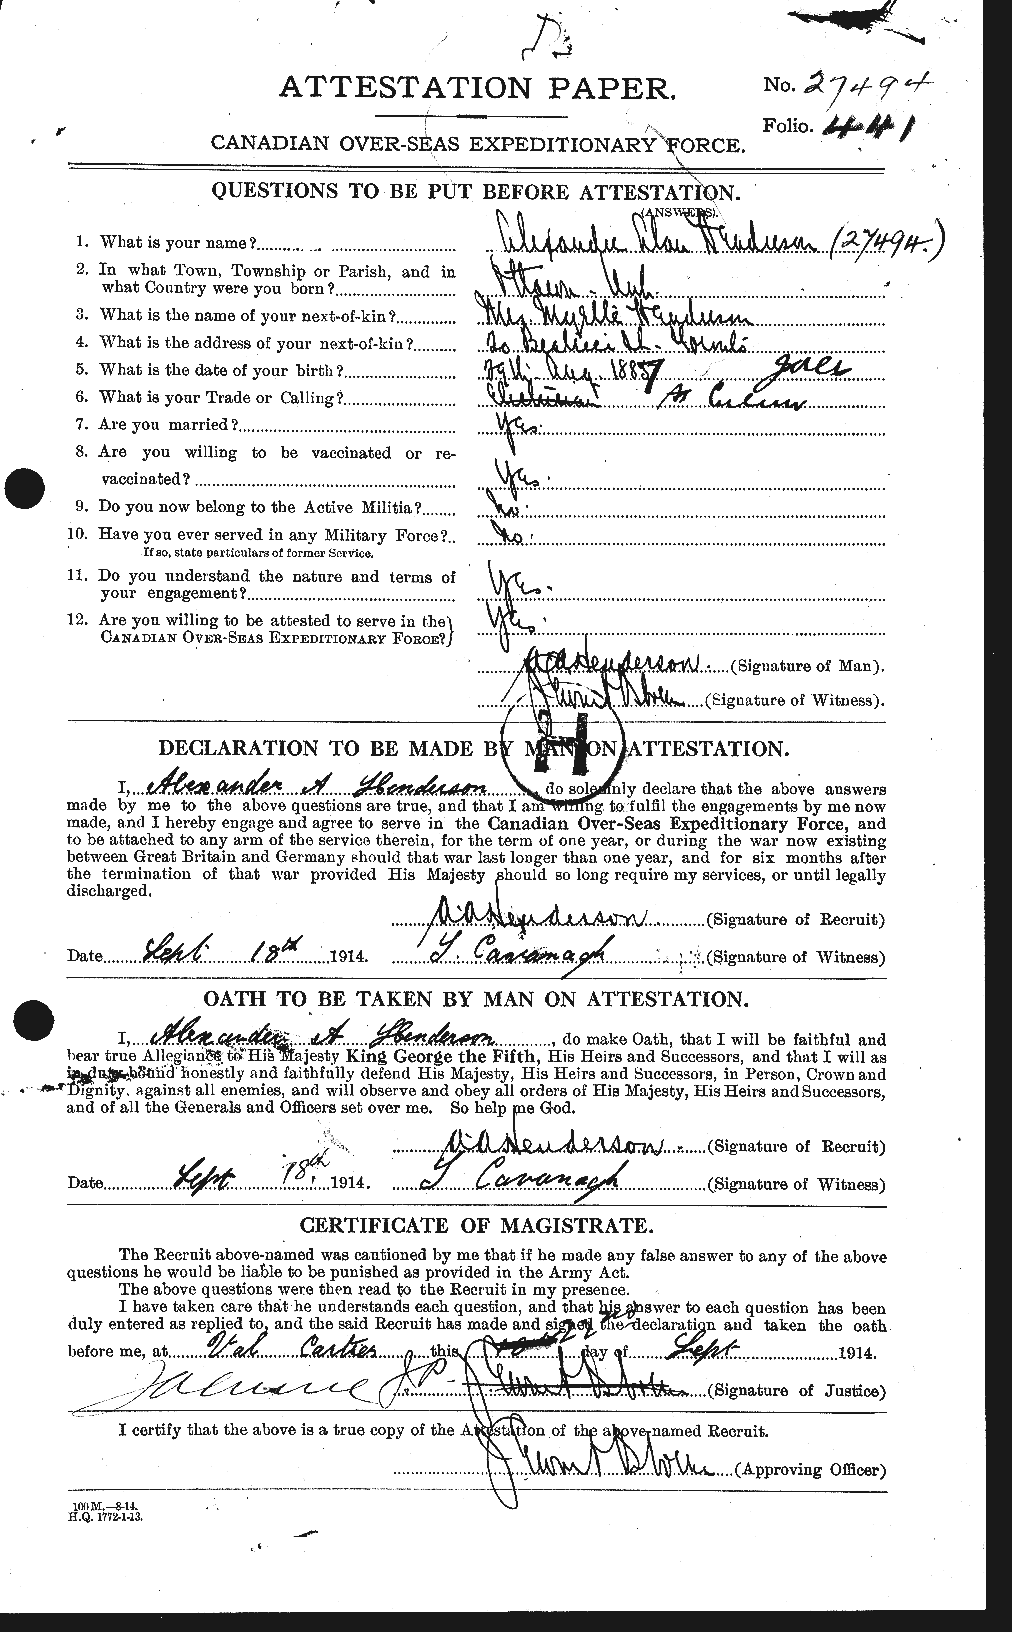 Dossiers du Personnel de la Première Guerre mondiale - CEC 390008a